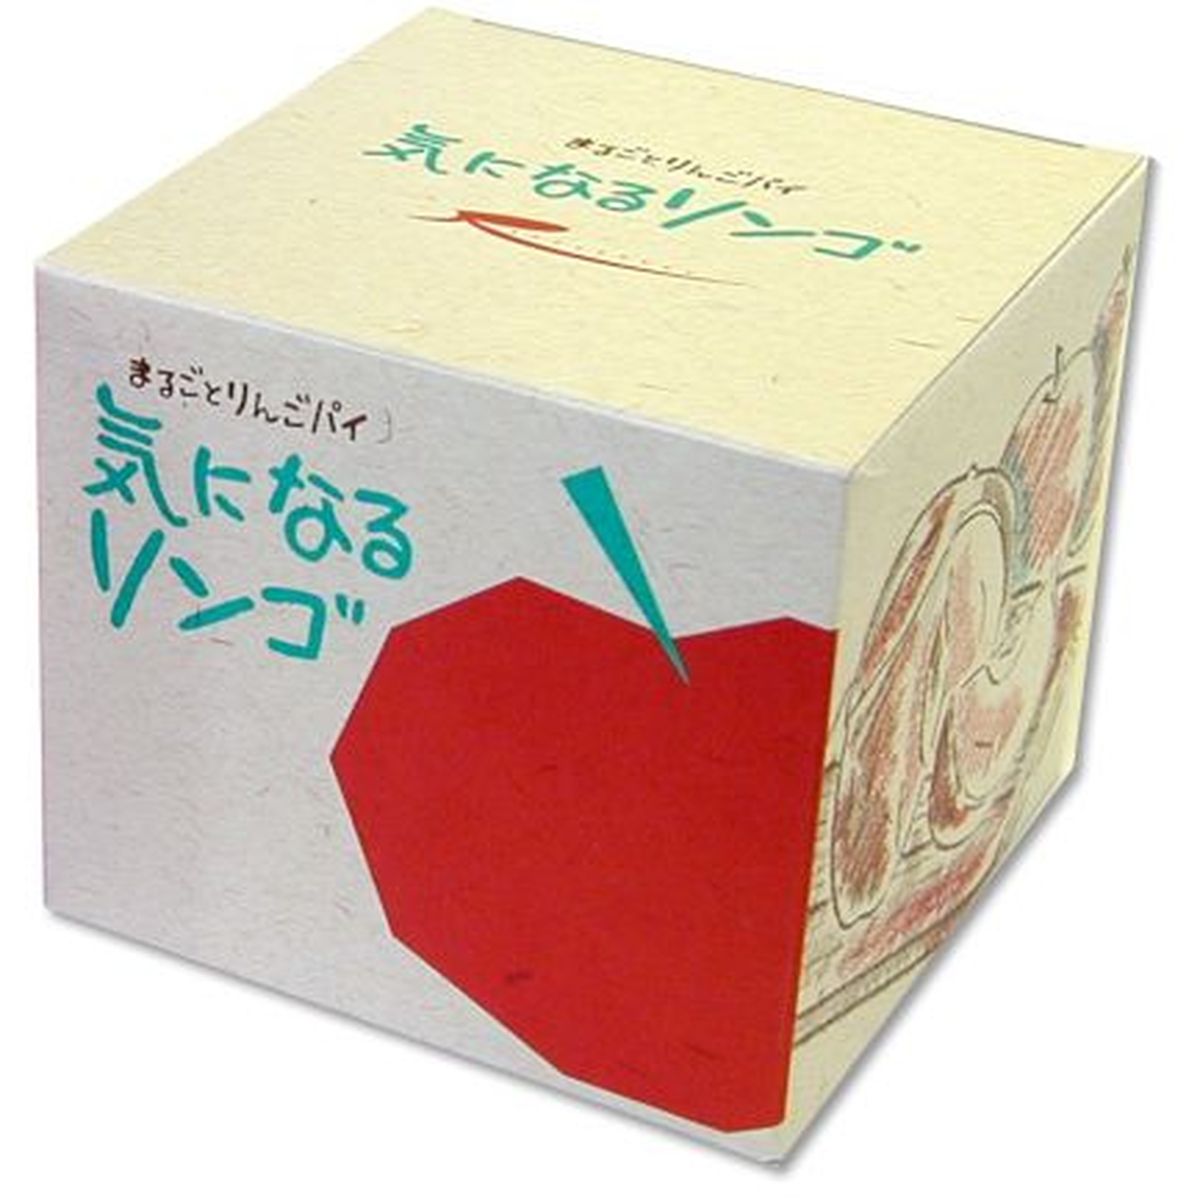 【12個入リ】ラグノオササキ 気ニナルリンゴ 1個